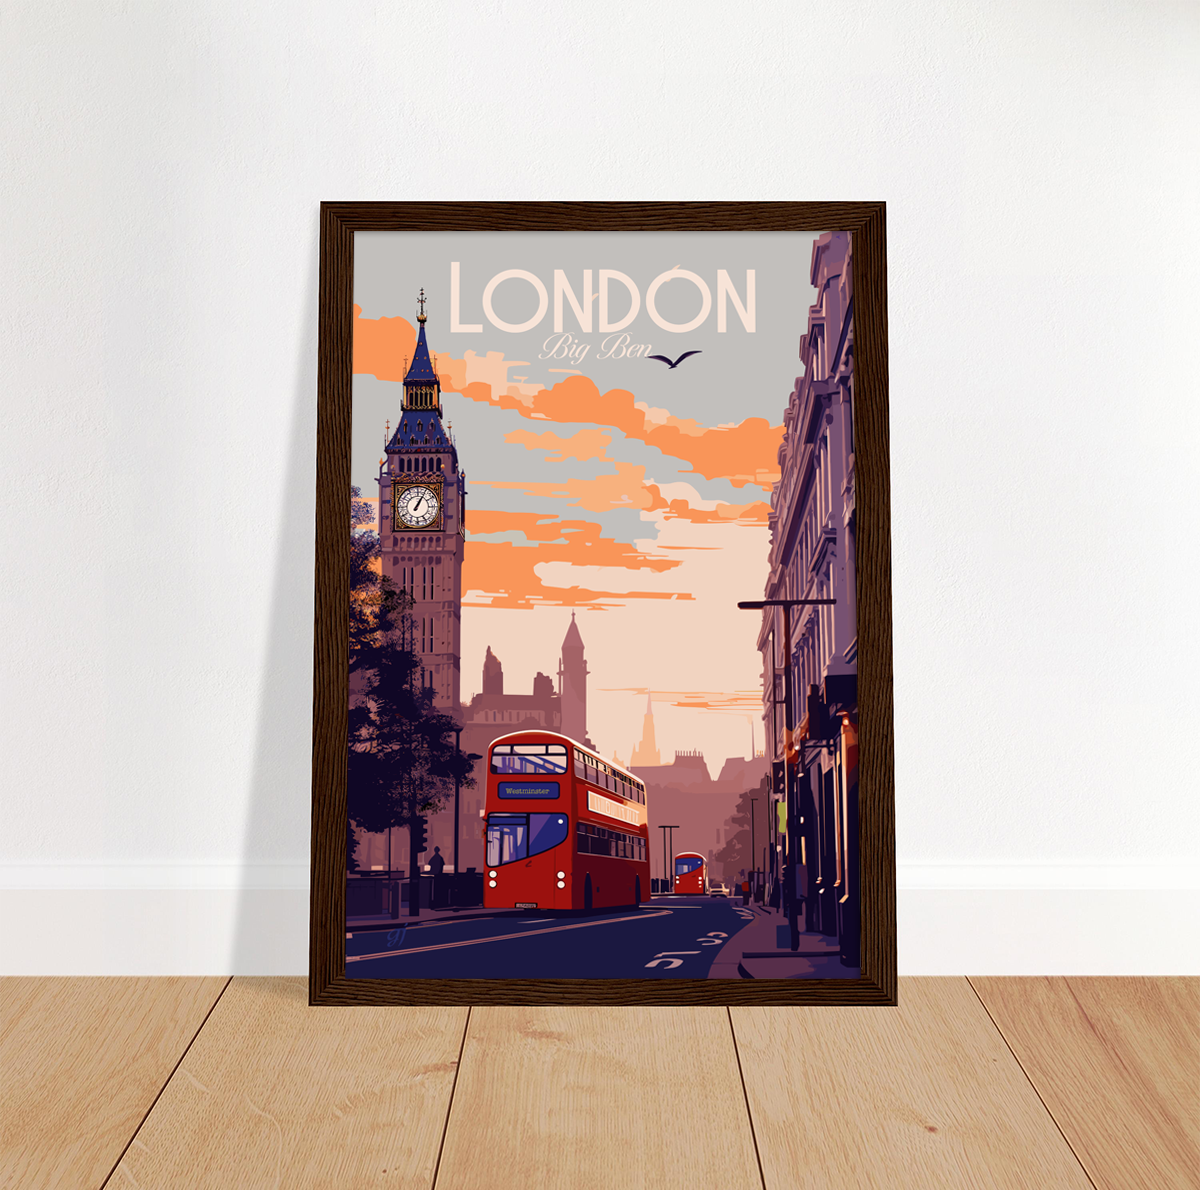 London - Big Ben poster by bon voyage design